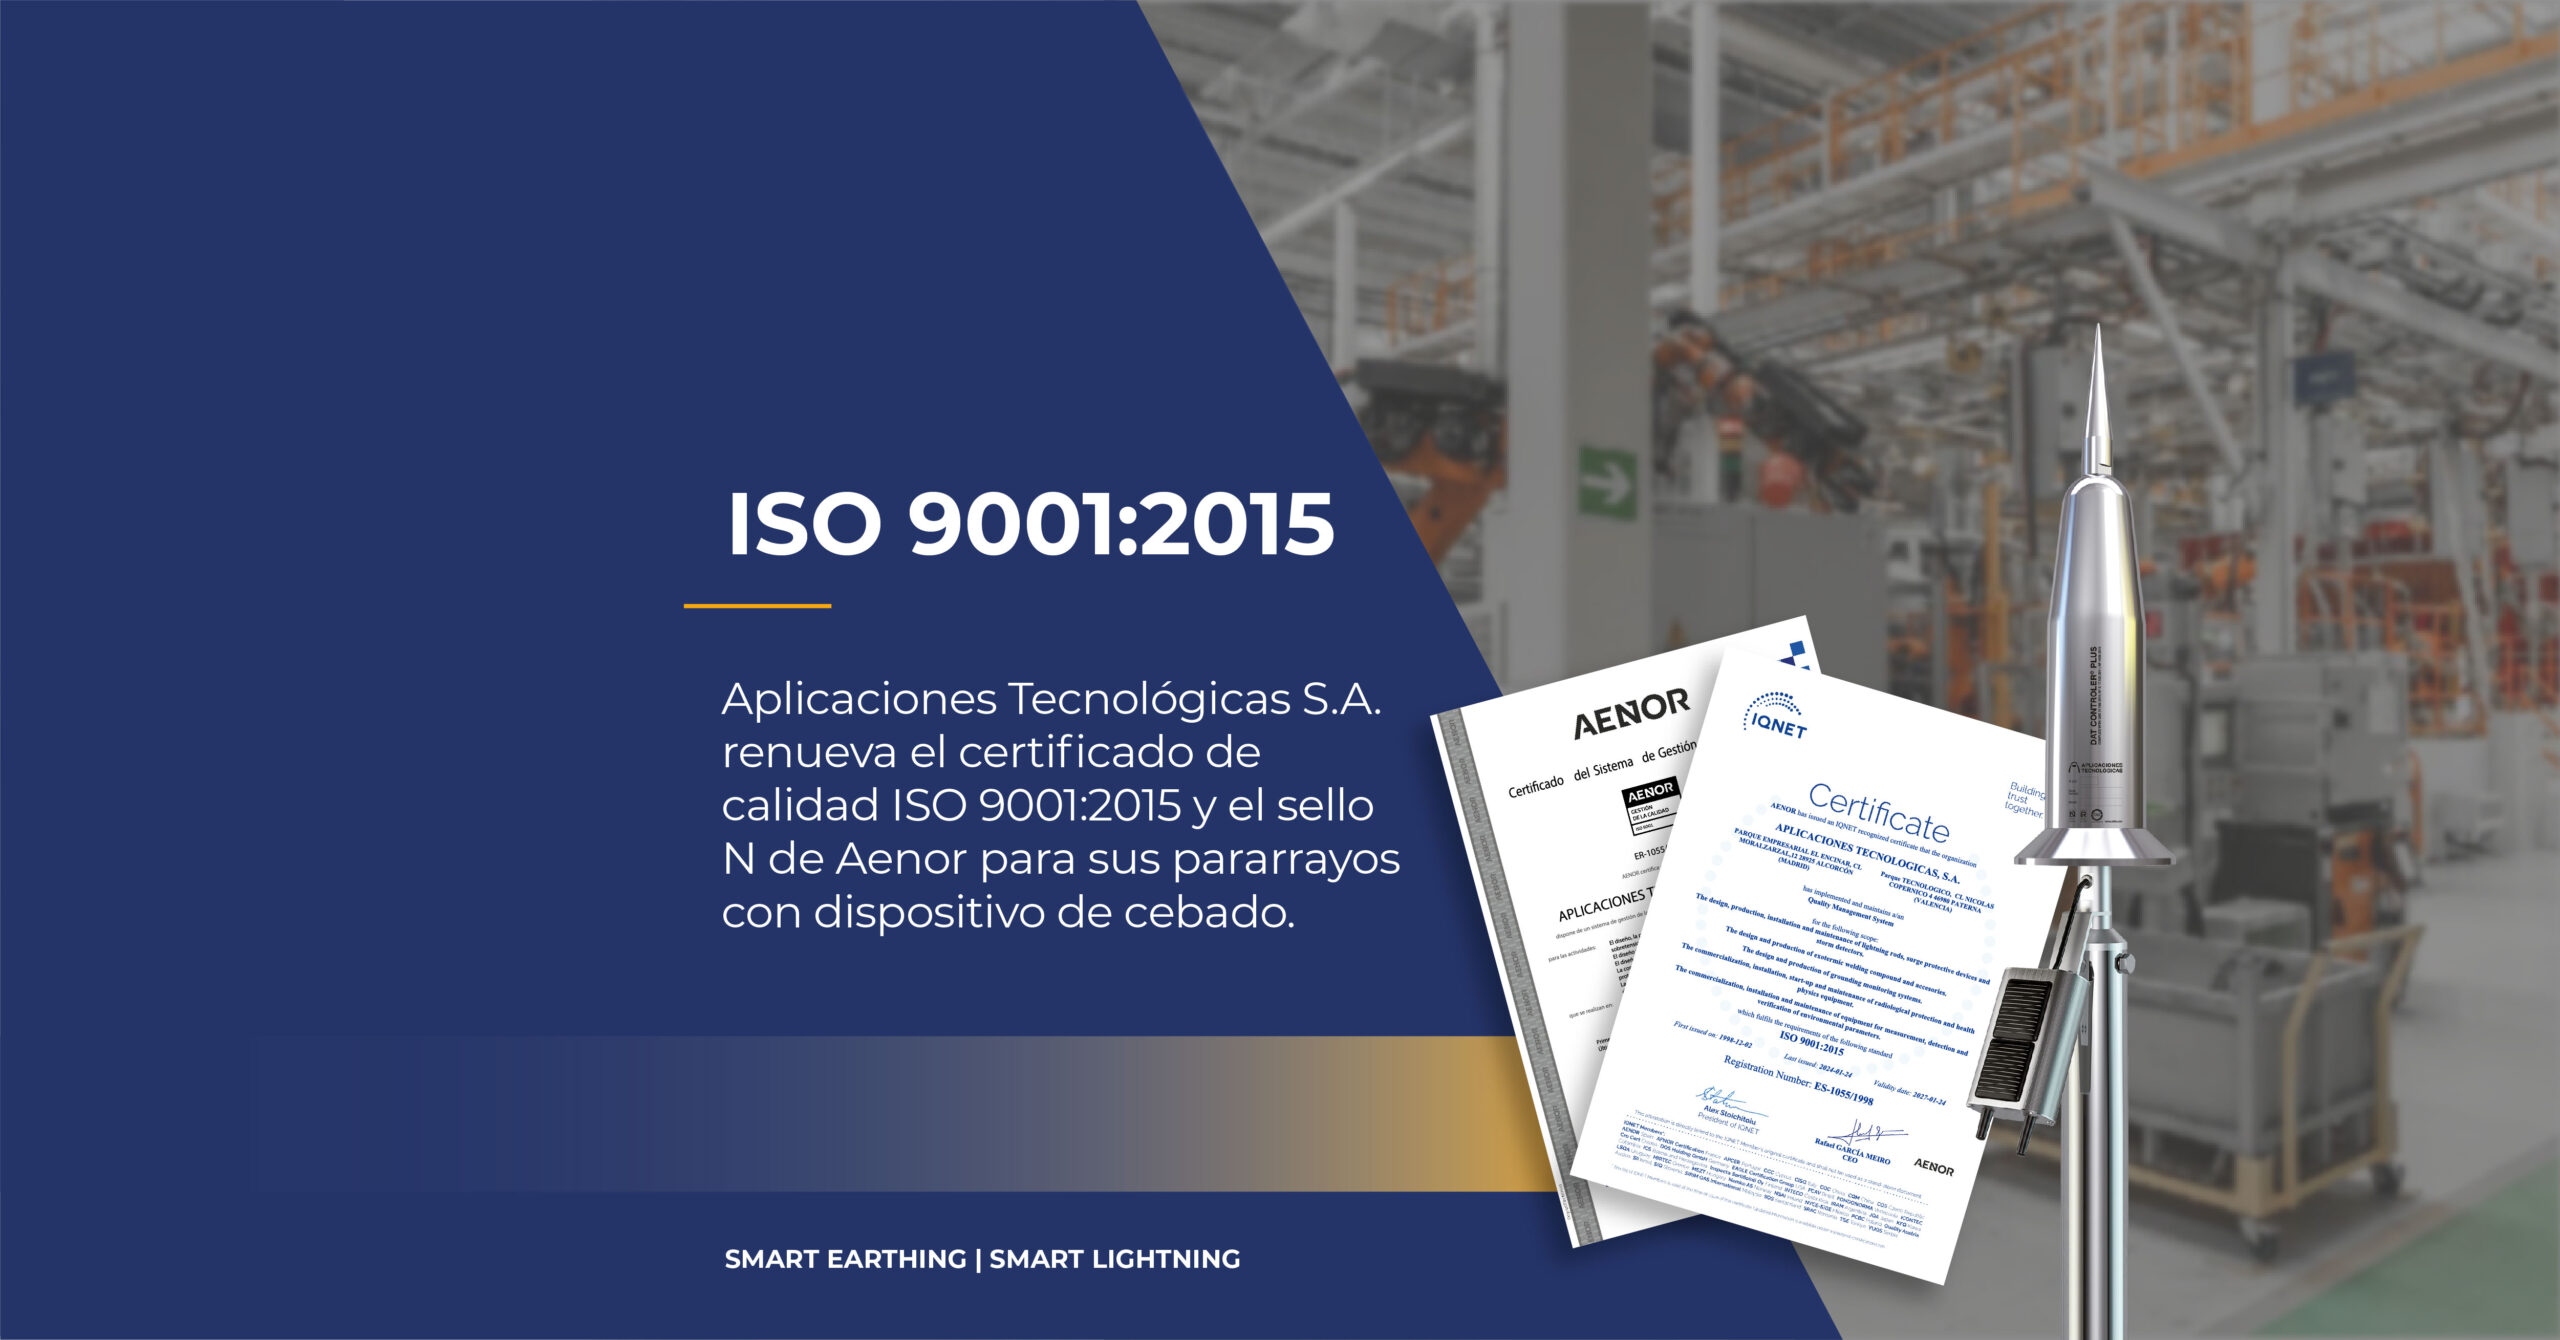 iso-90012015-renovacion-certificado-de-calidad-pararrayos-aenor